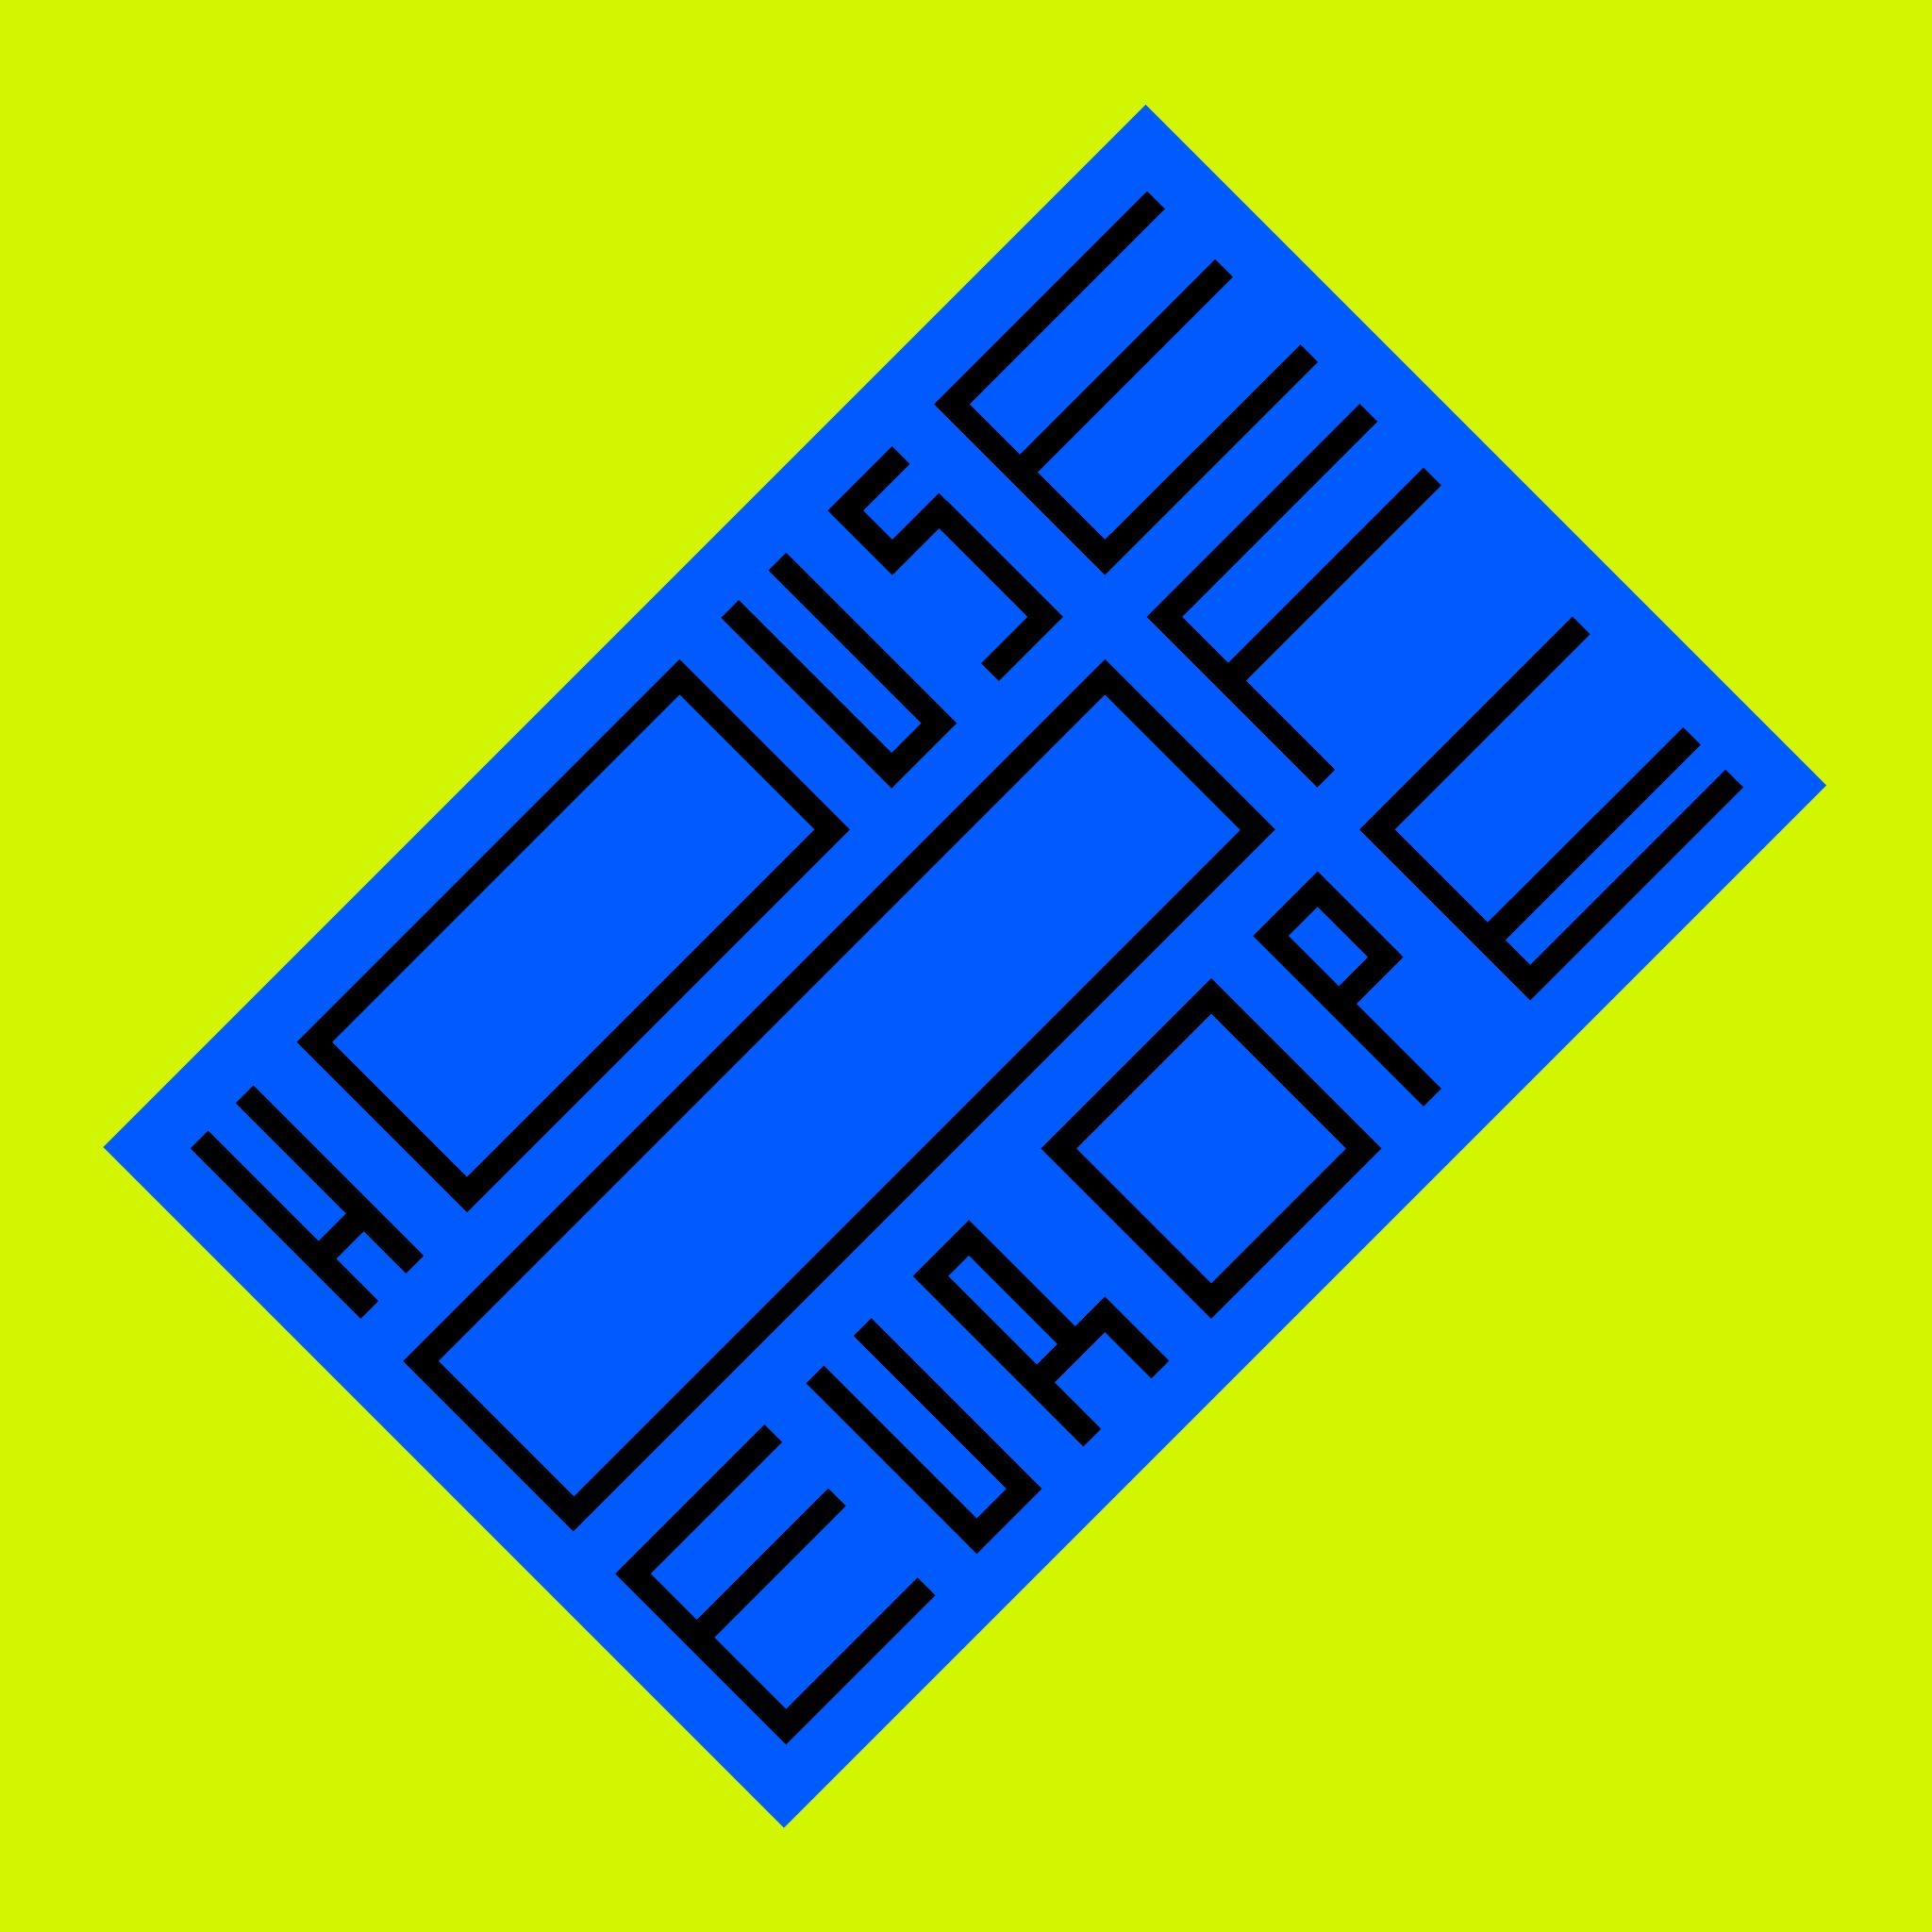 House of Europe logo 2